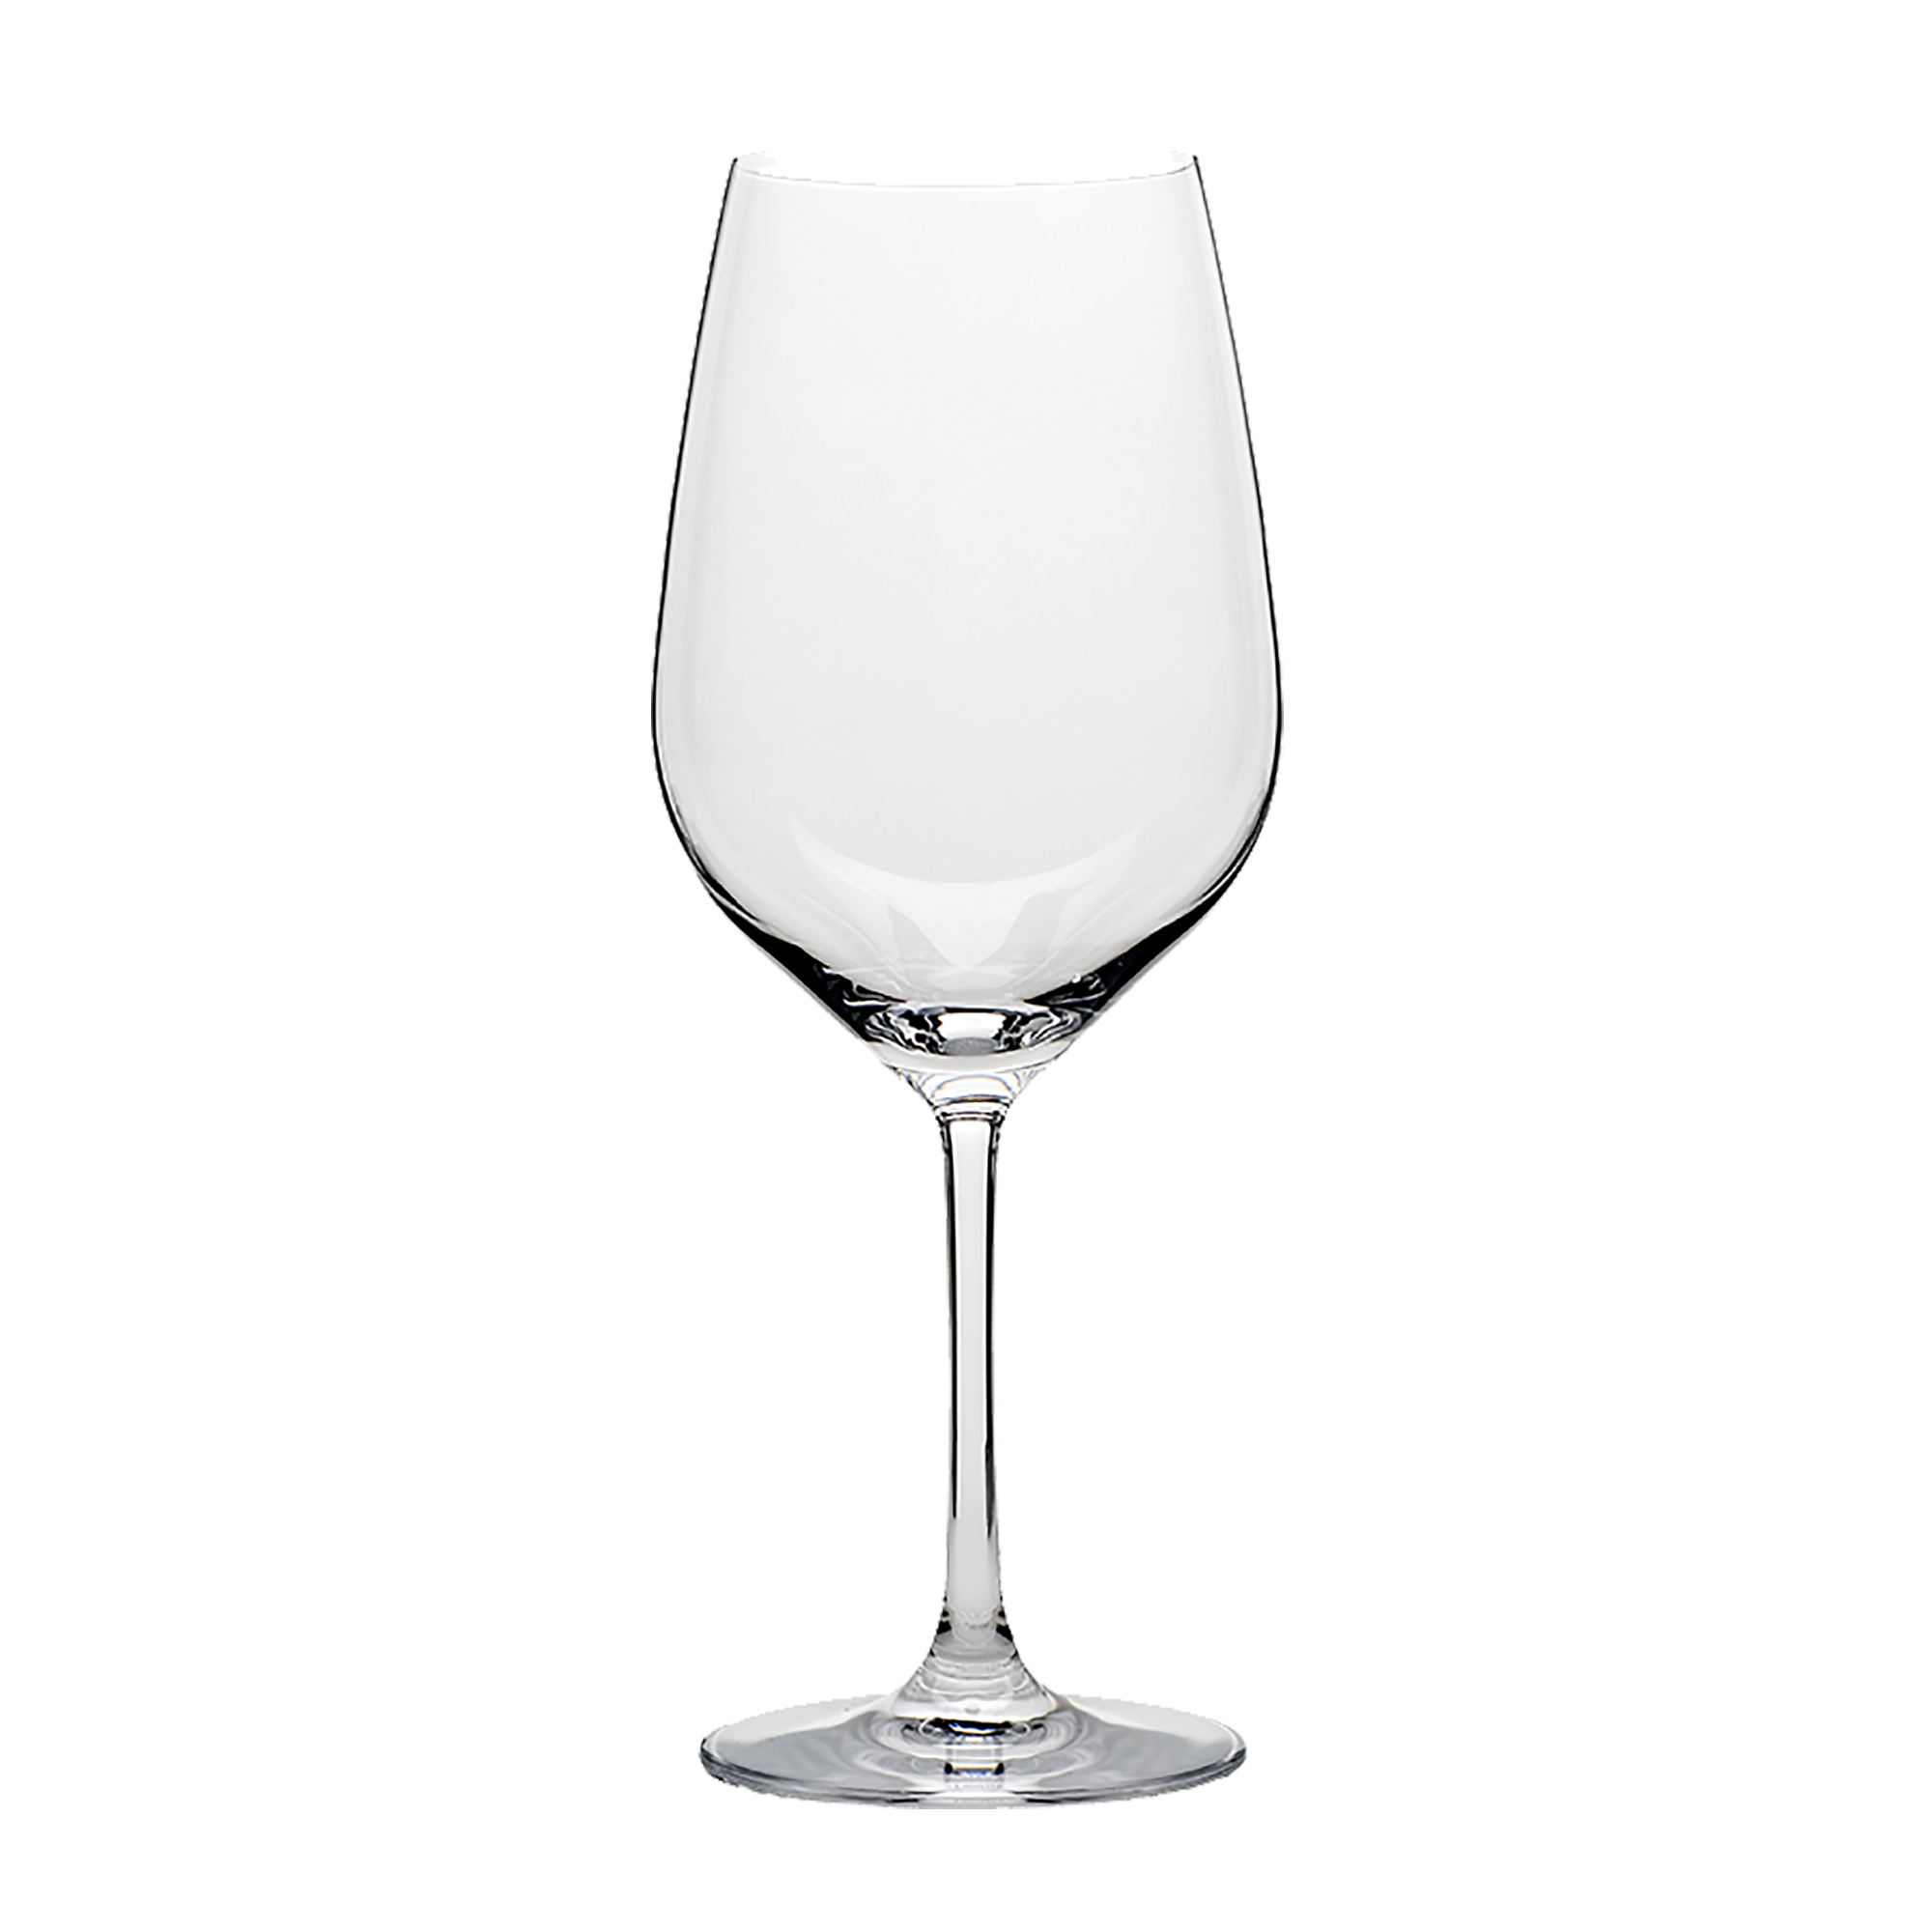 Grand Epicurean Cabernet/Bordeaux Wine Glass 22 oz. - Set of 4